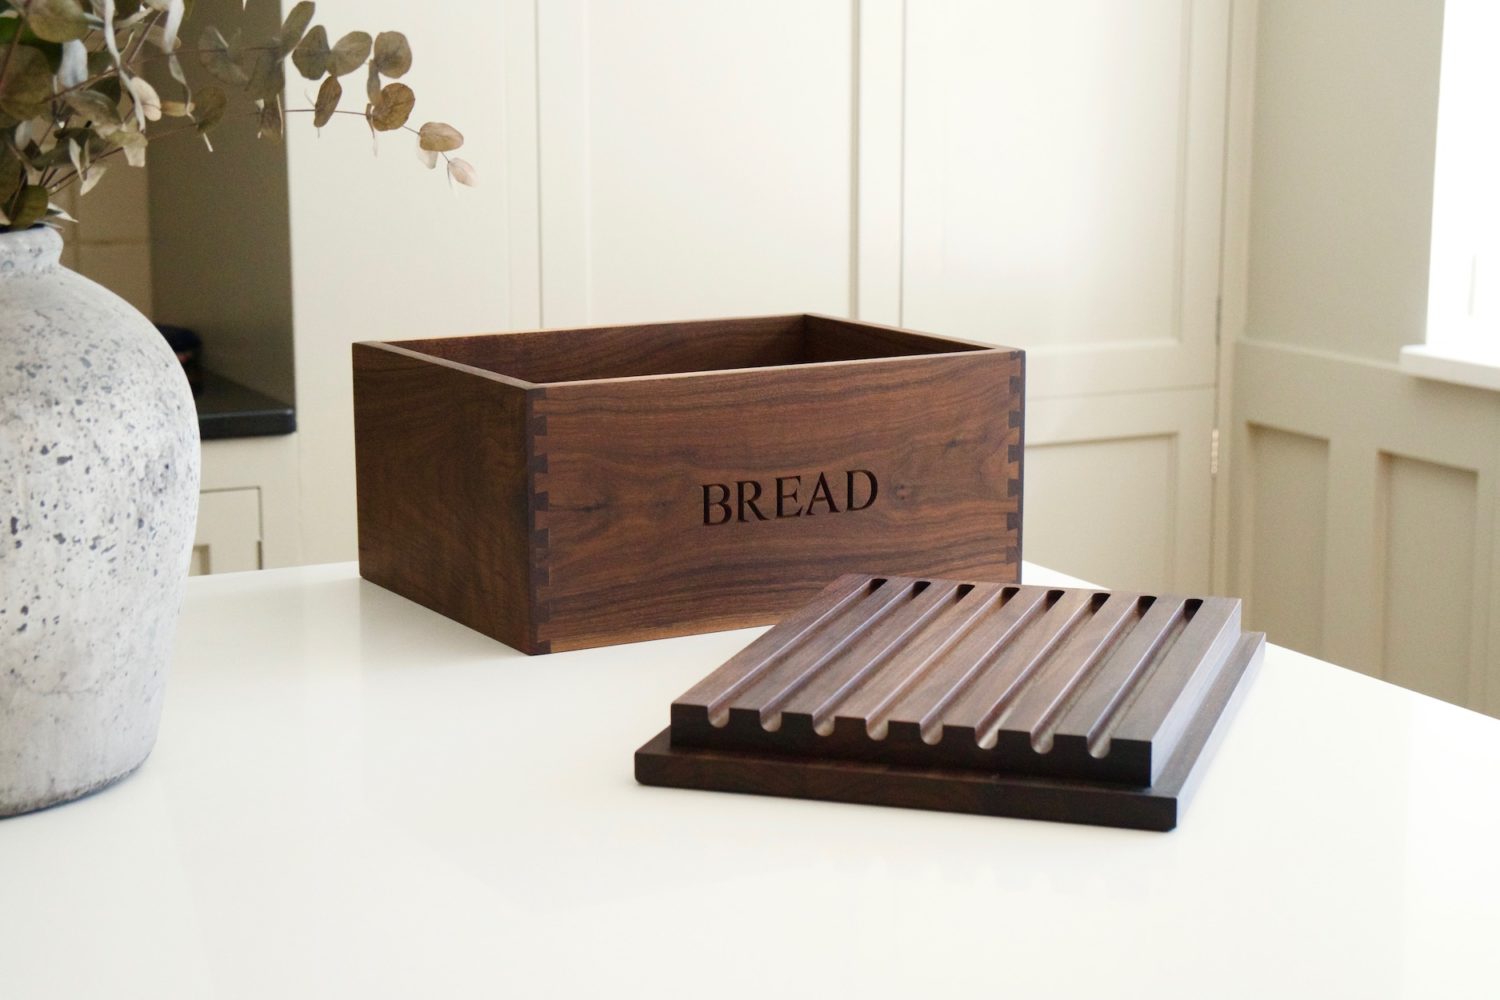 bread-bin-with-bread-board-lid